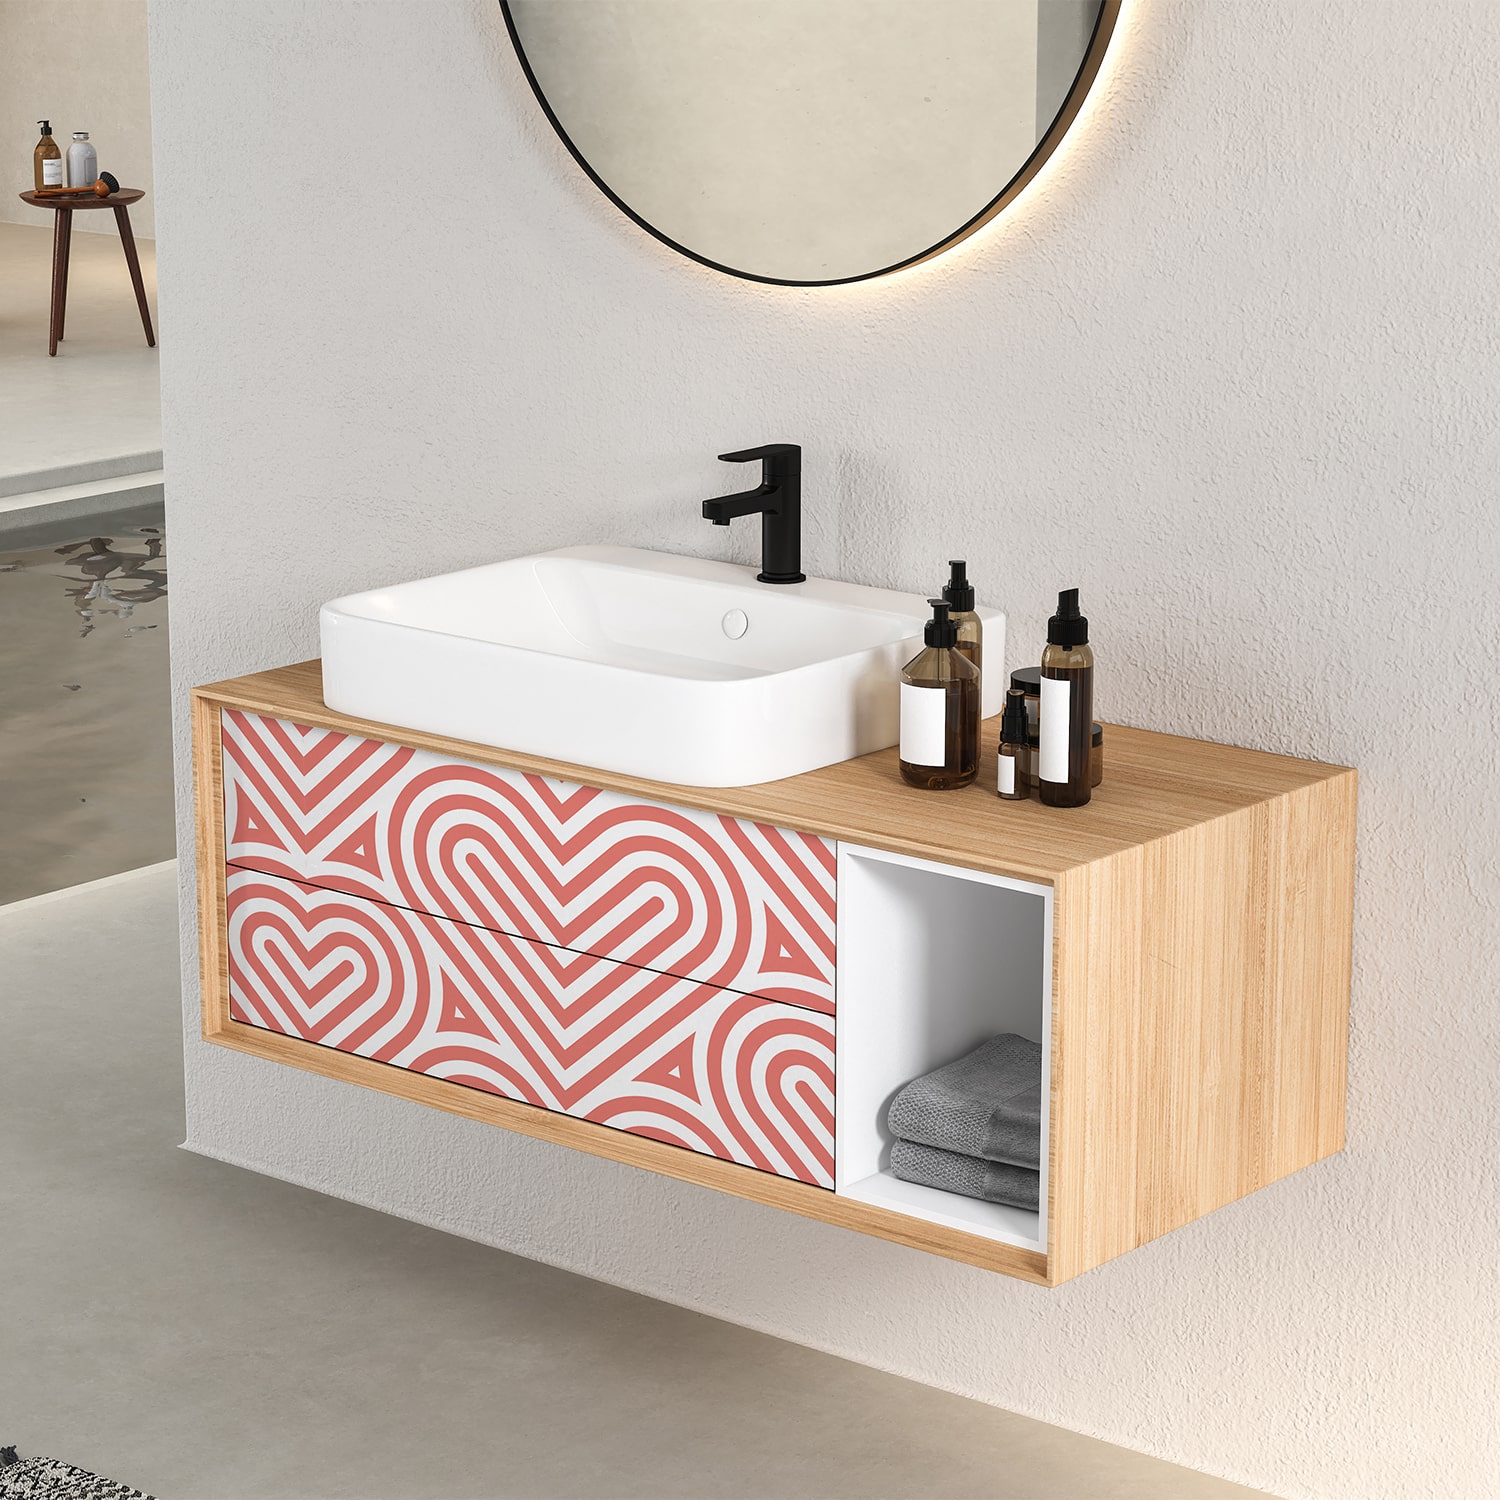 PP51-meuble-papier-peint-adhesif-decoratif-revetement-vinyle-coeurs-abstraits-renovation-meuble-mur-min